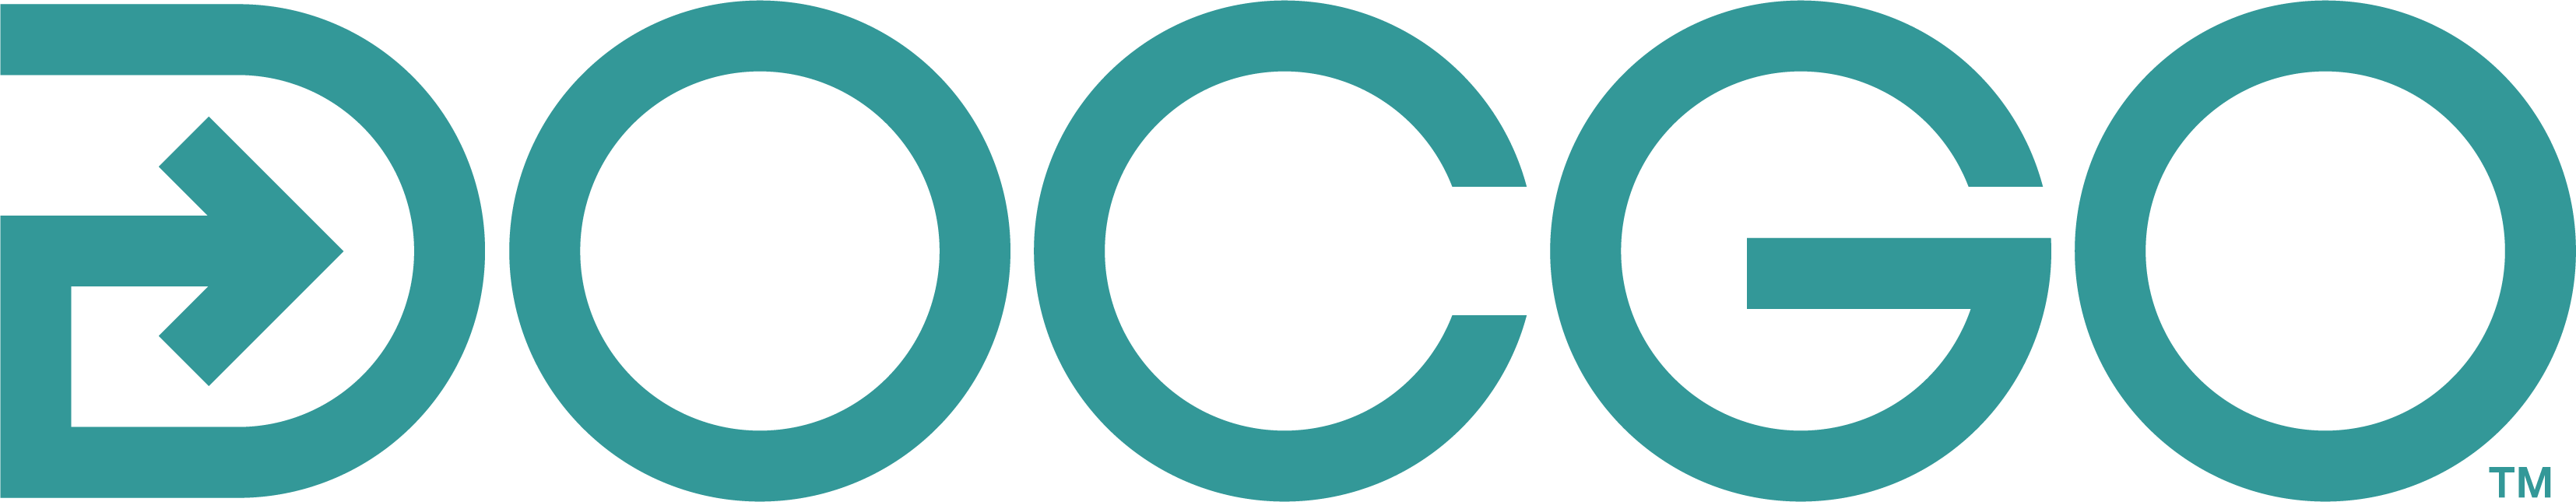 docgo logo